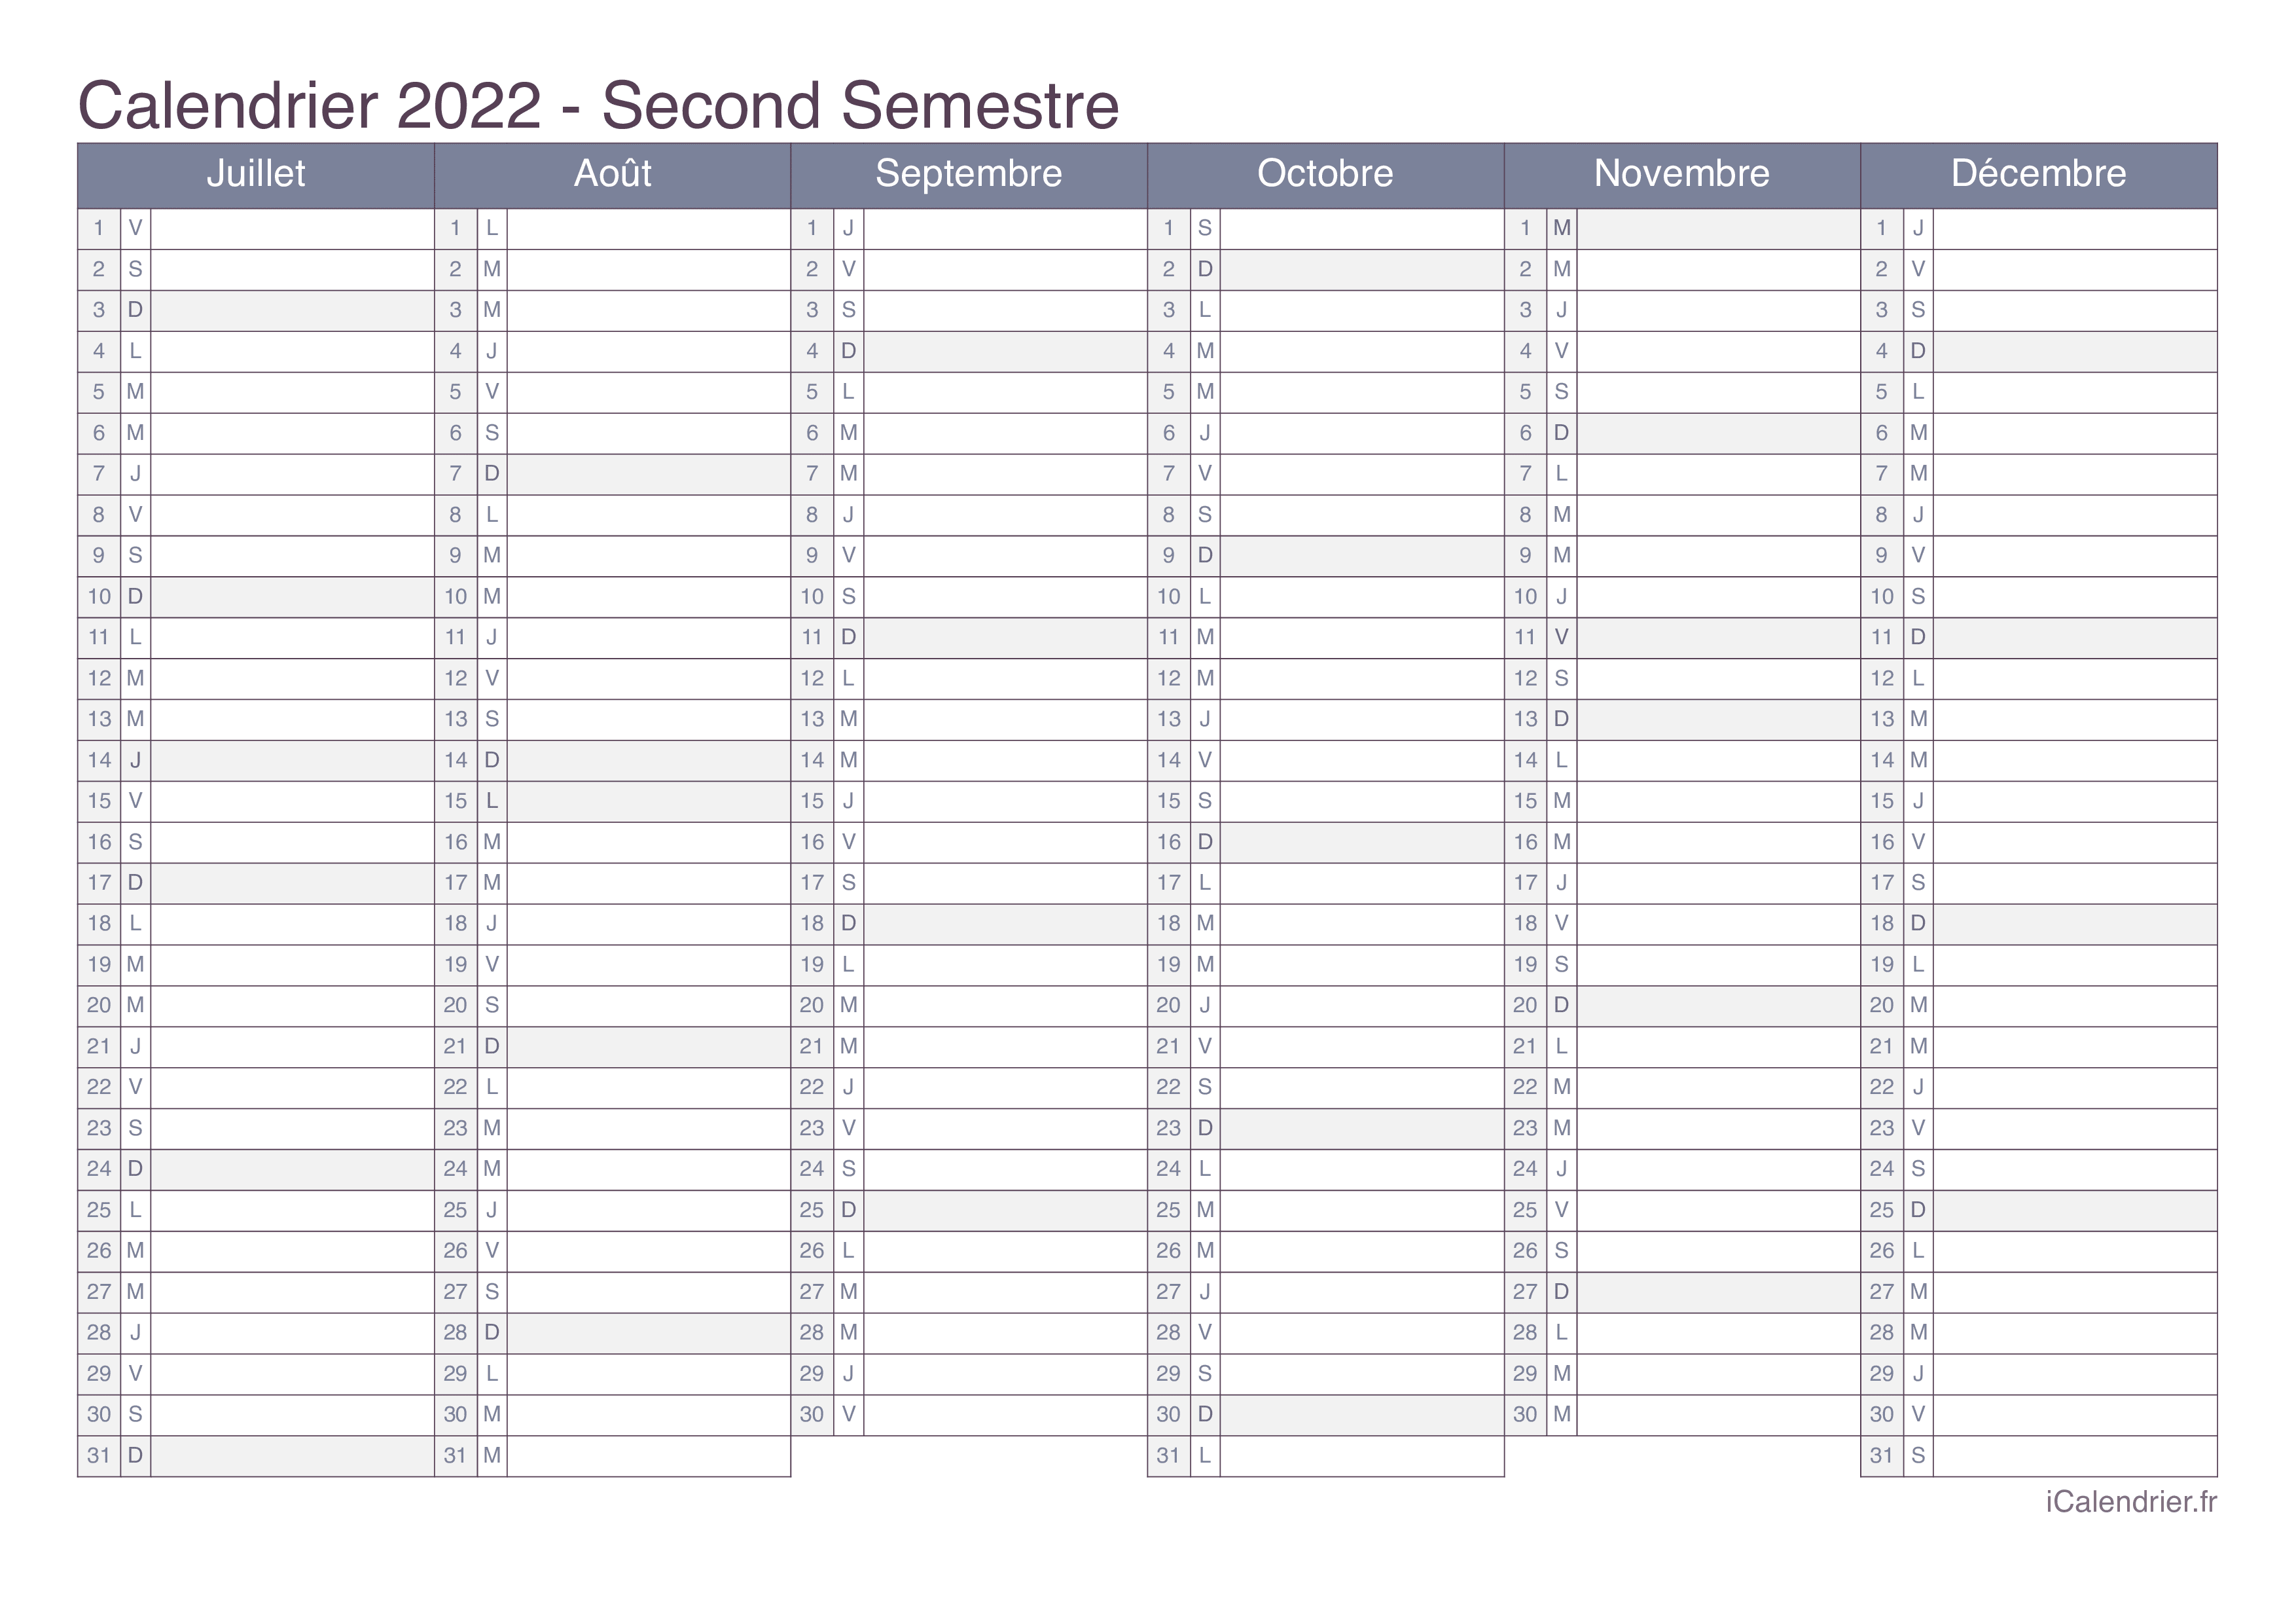 Calendrier Scolaire Vierge 2019 Et 2022 à Imprimer Calendrier 2022 à imprimer PDF et Excel   iCalendrier